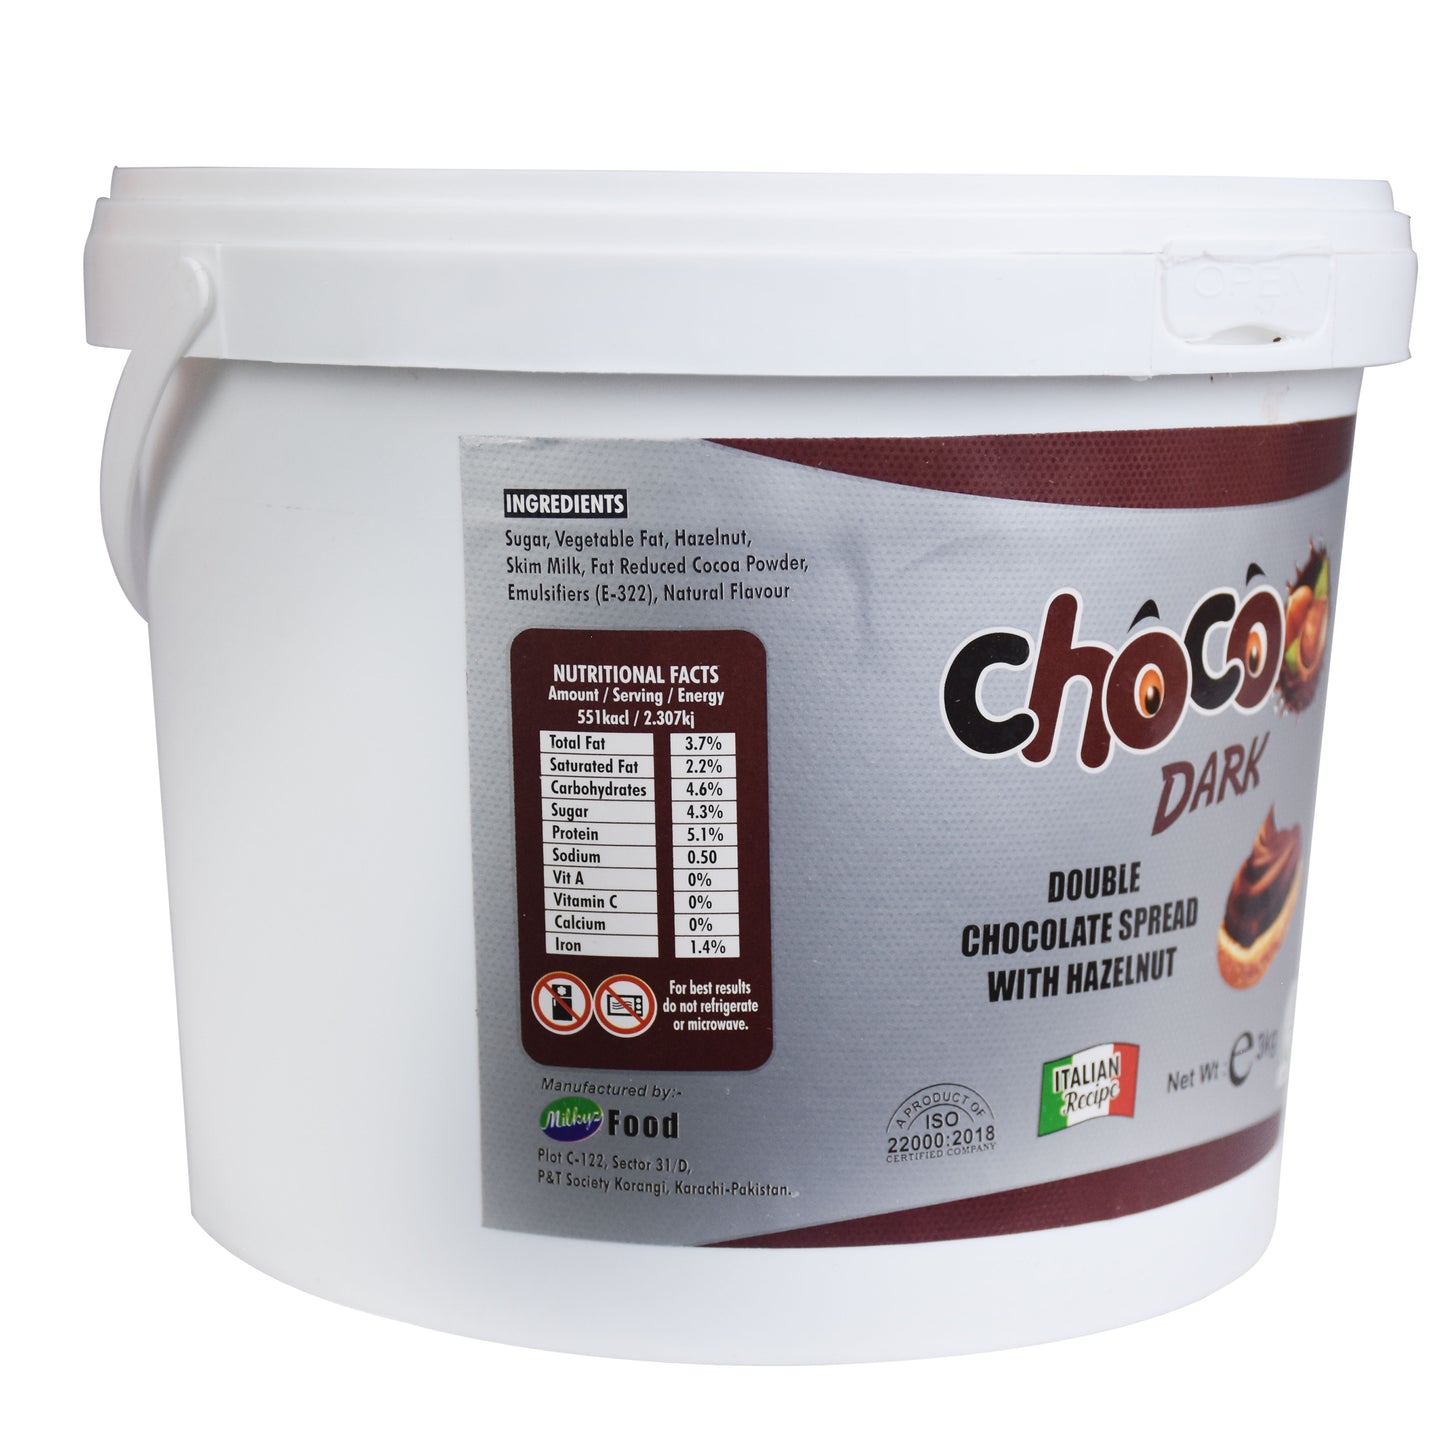 Milkyz Food Choco Dark Double Chocolate Spread With Hazelnut 3kg Bucket